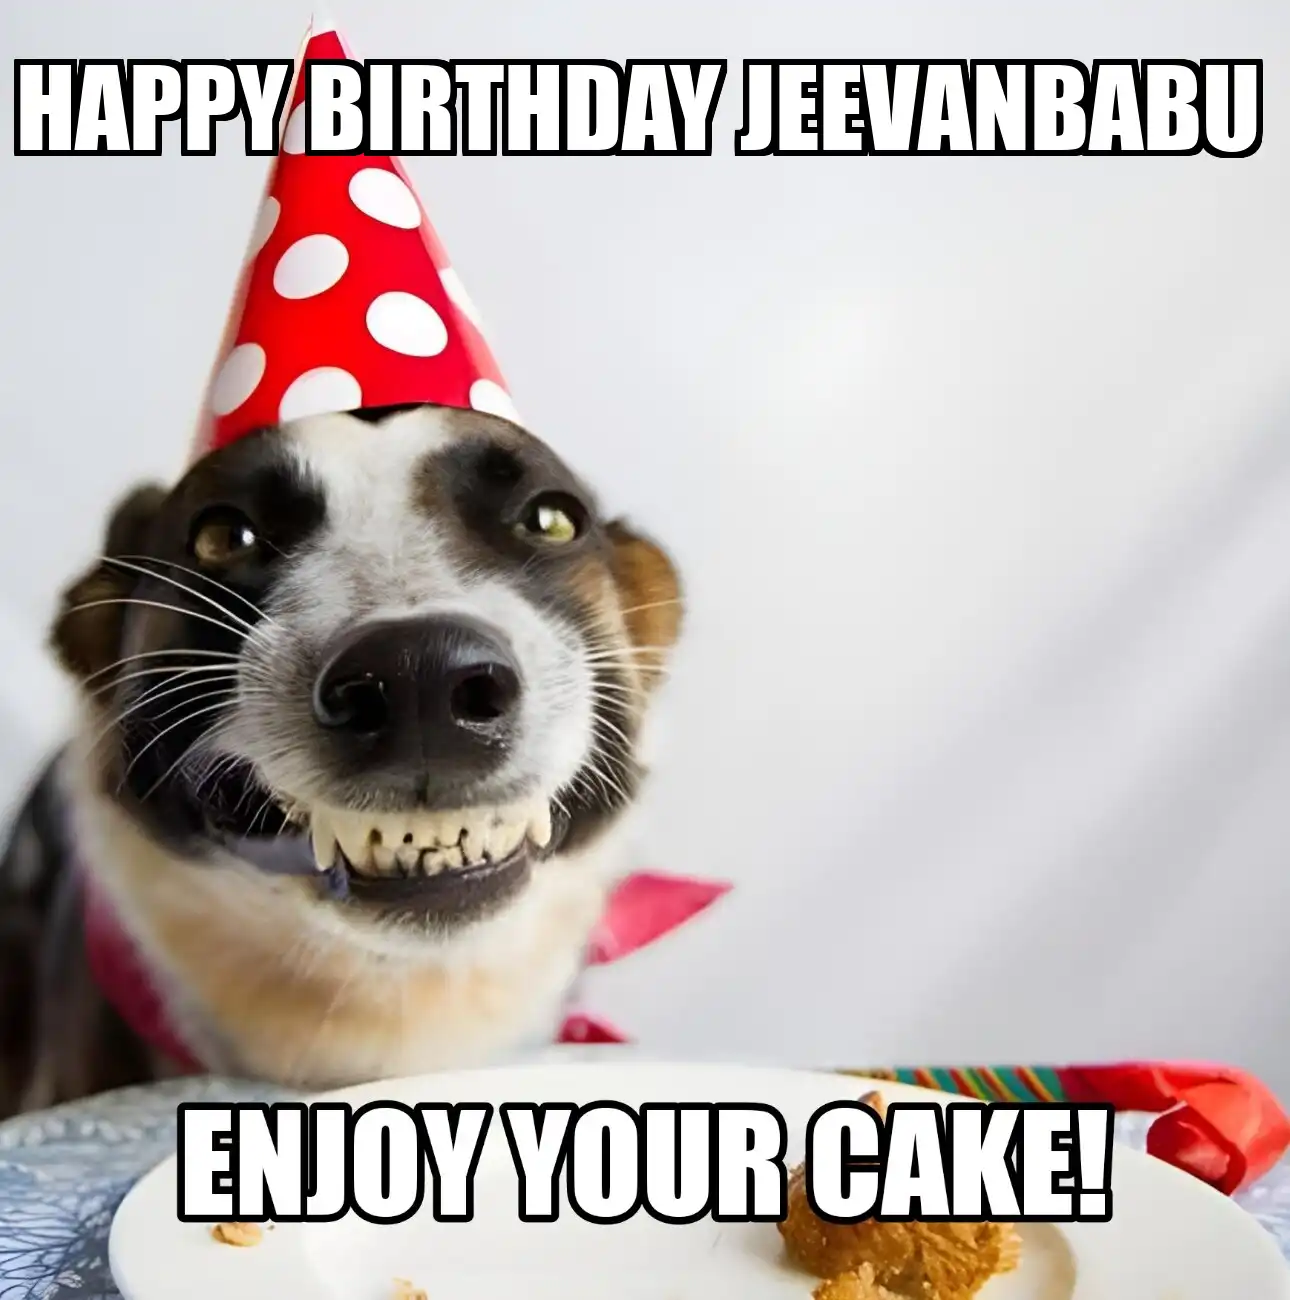 Happy Birthday Jeevanbabu Enjoy Your Cake Dog Meme